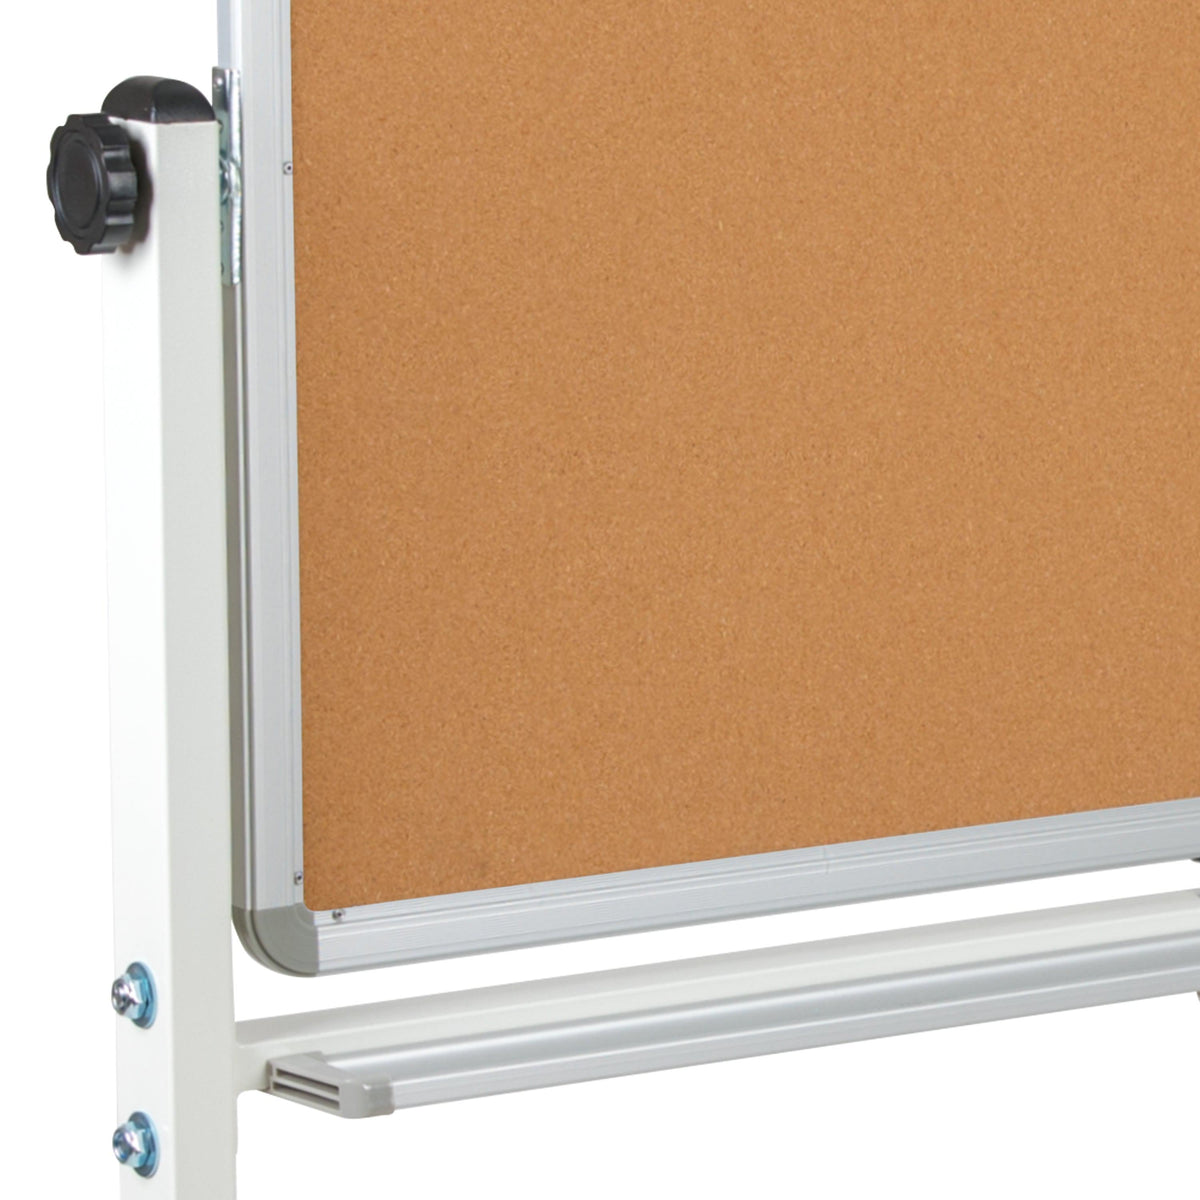 53"W x 59"H |#| 53"W x 59"H Reversible Mobile Cork Bulletin & White Board with Pen Tray